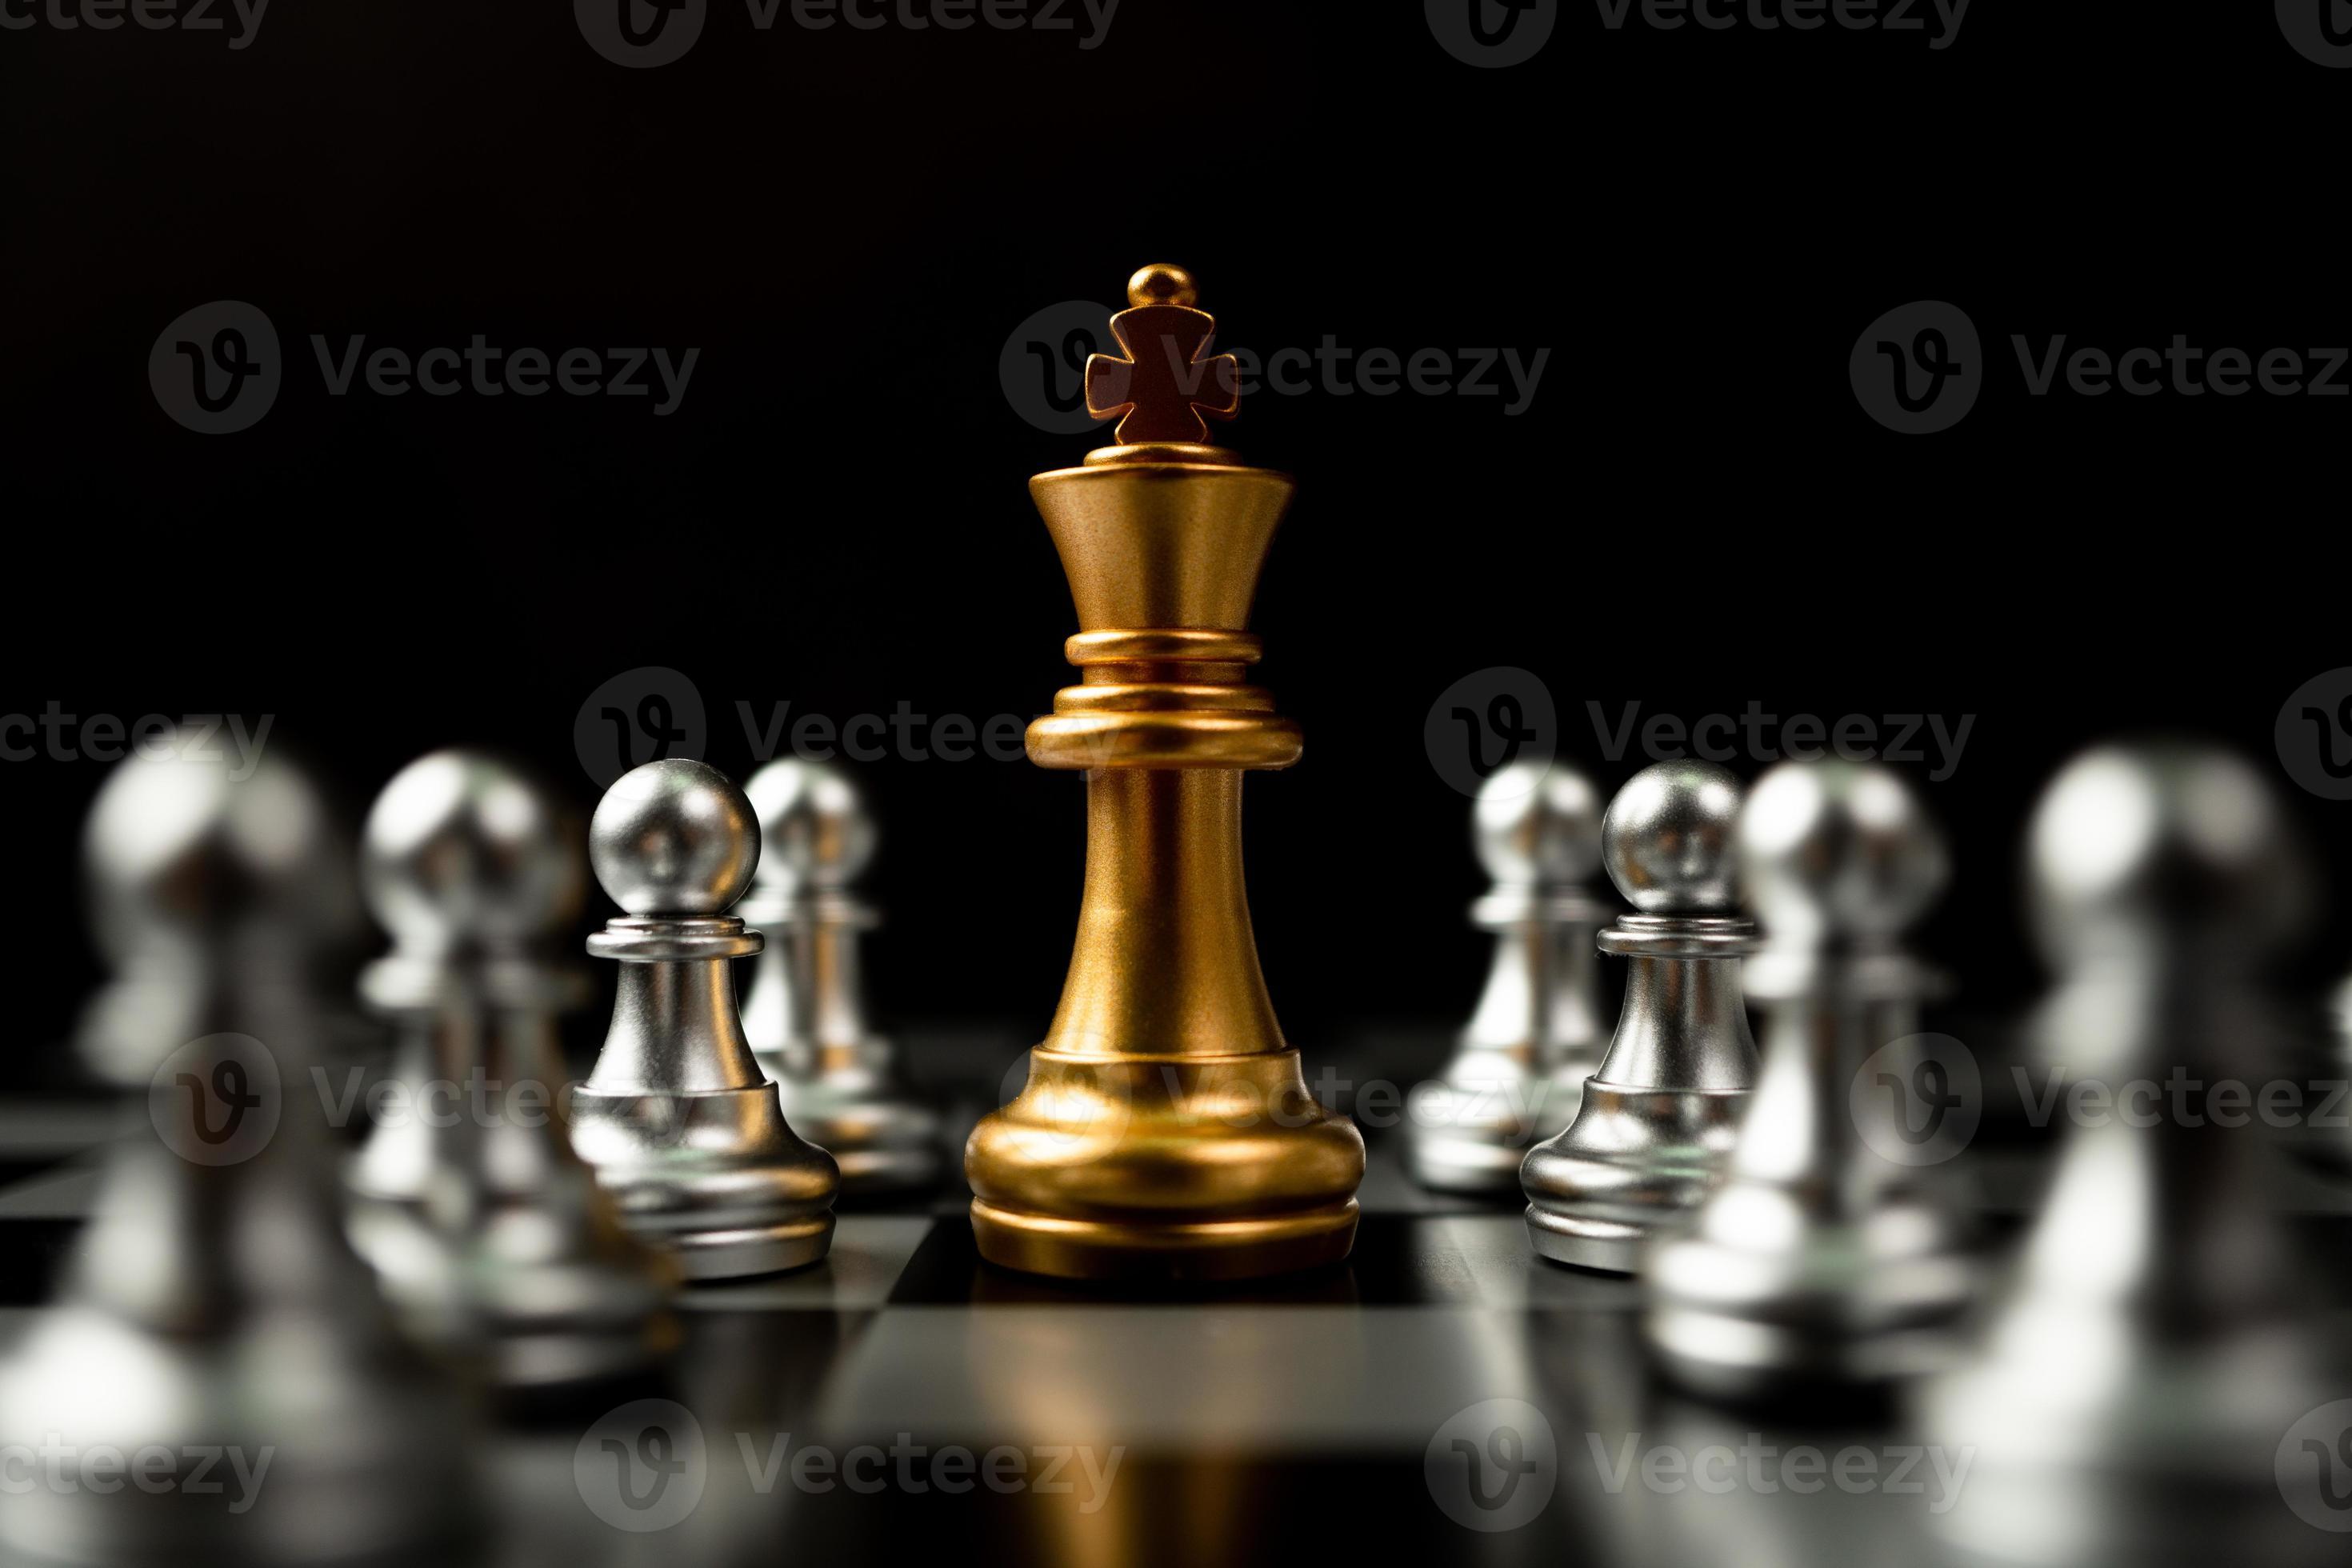 Berdnavek: 'Convido todos a jogarem a partida de xadrez onde o resultado  seja a paz' - Dourados Agora - Notícias de Dourados-MS e região